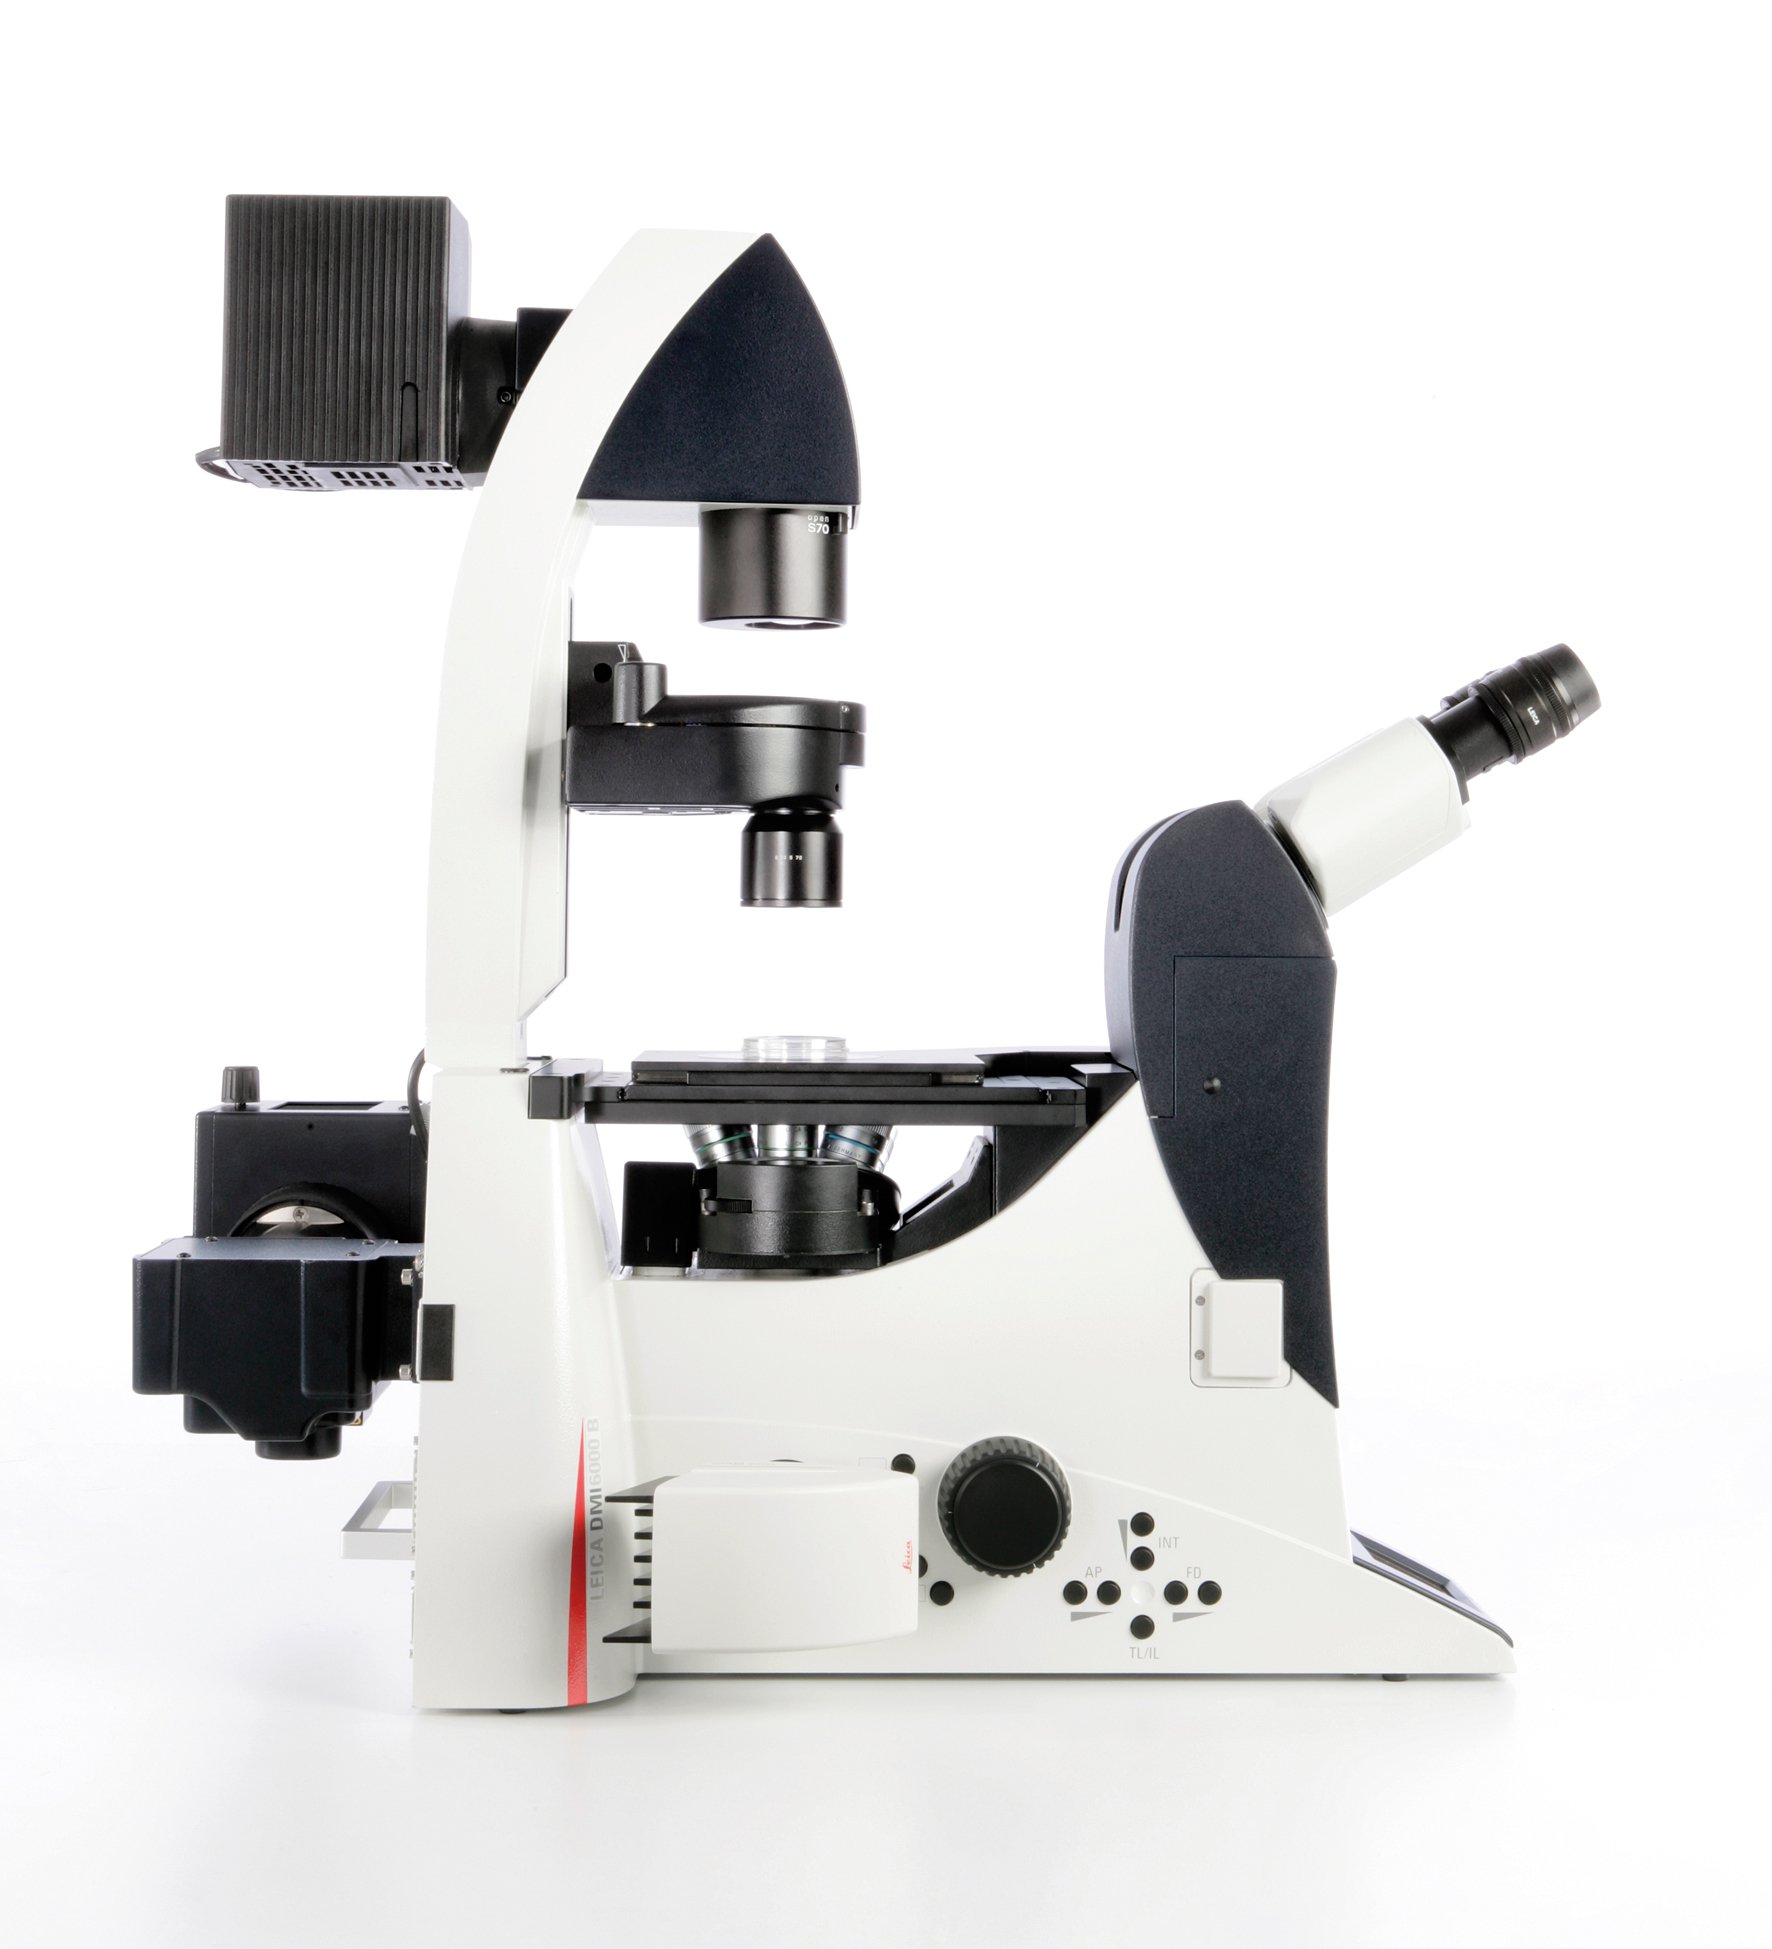 Il microscopio Leica DMI6000 B offre elevati livelli di automazione per applicazioni avanzate di ricerca.